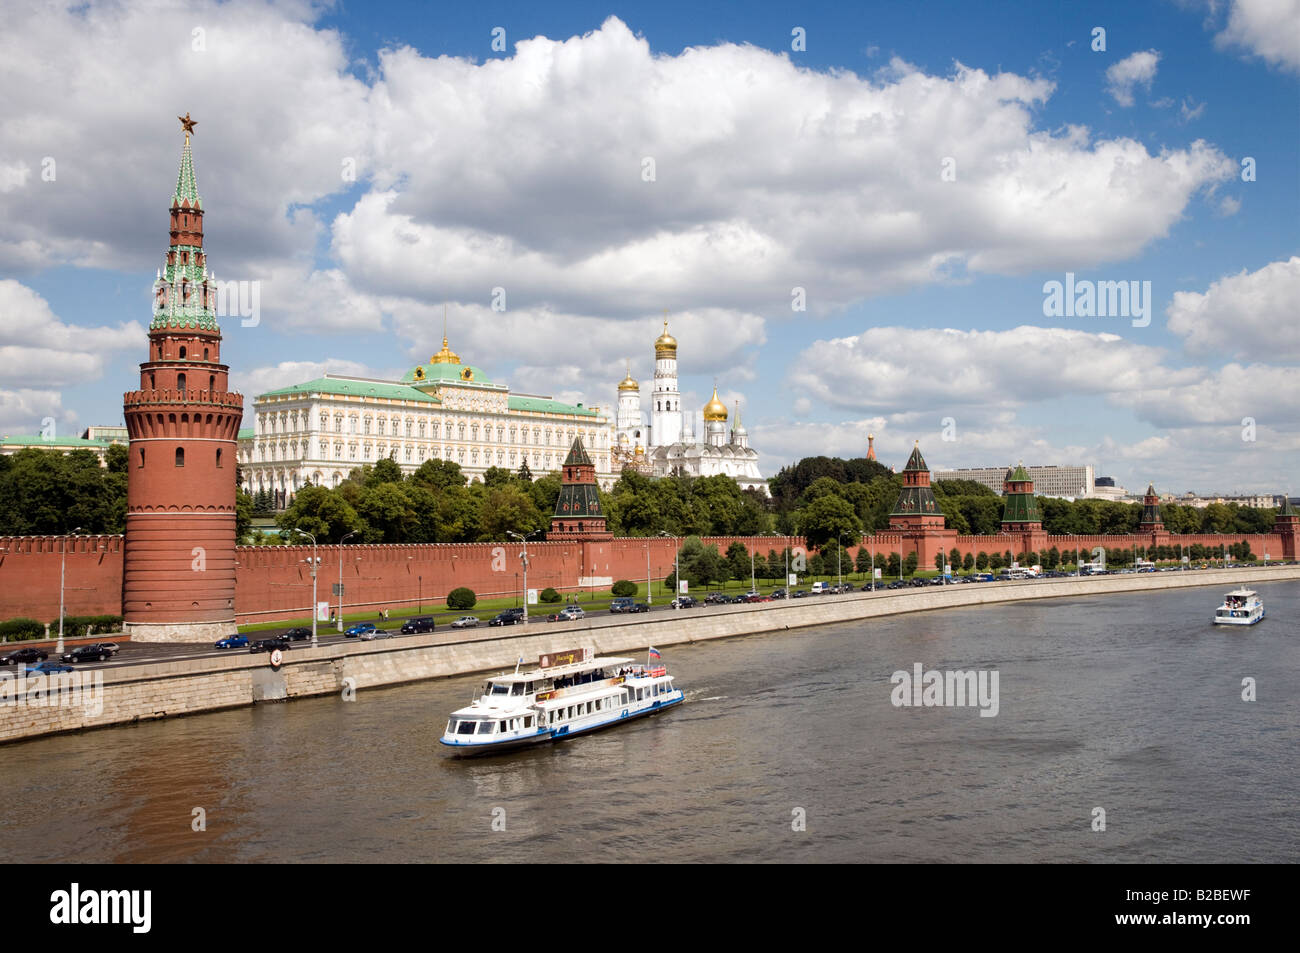 Balade en bateau sur la Moskva passé le Kremlin Moscou Russie Banque D'Images